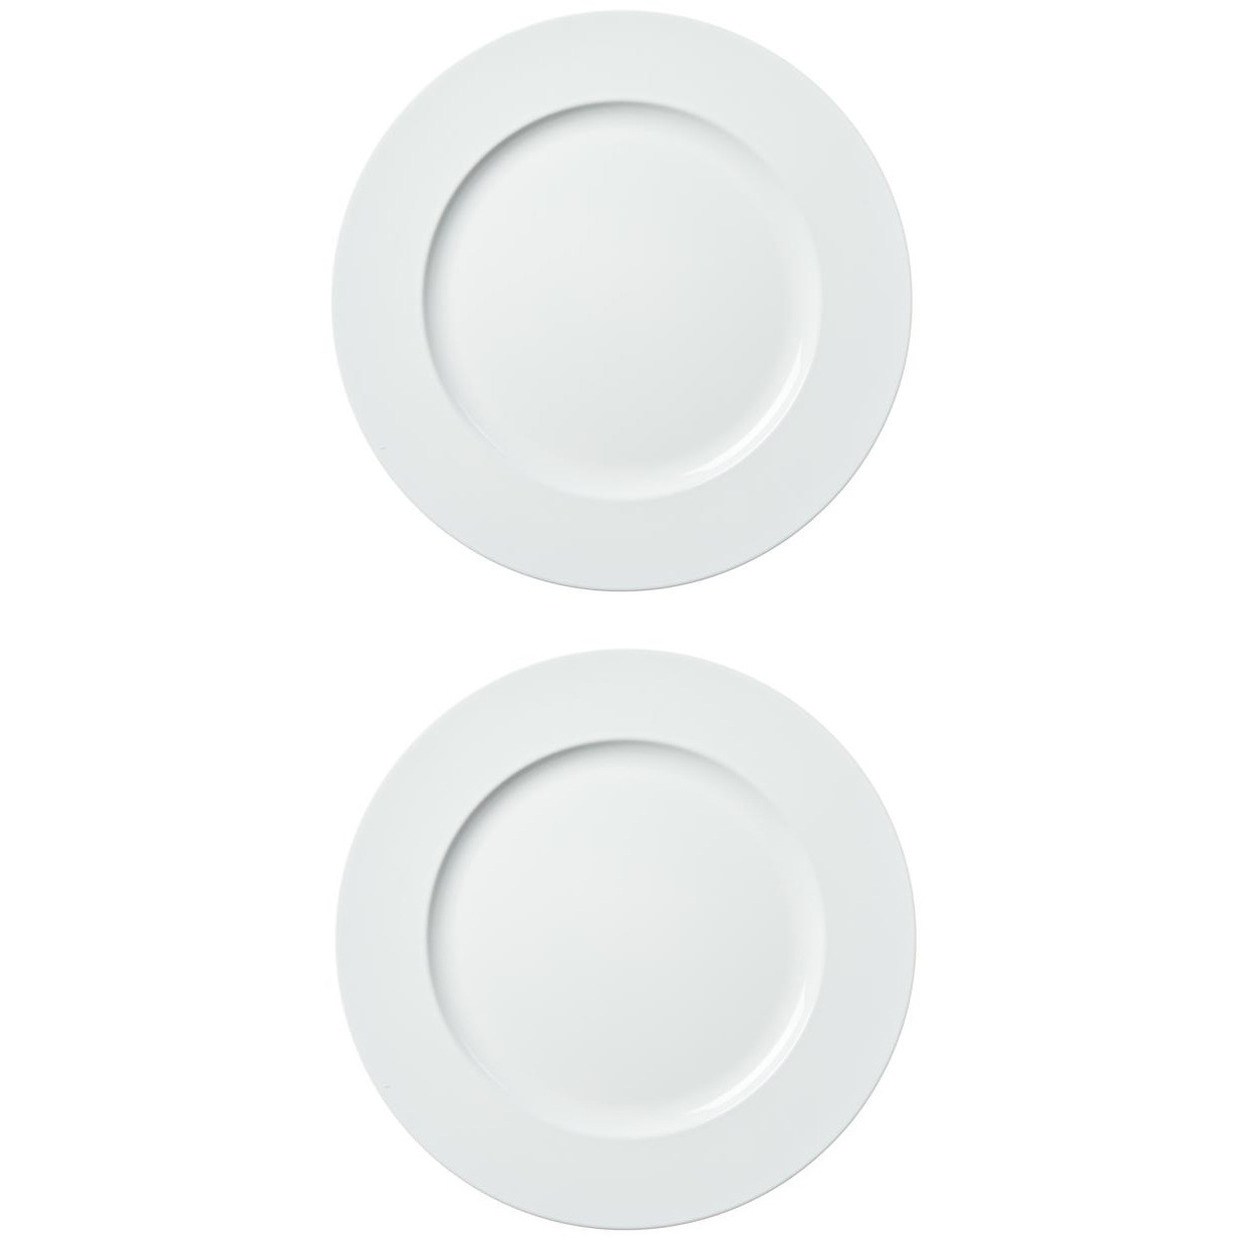 6x stuks diner borden-onderborden wit 33 cm